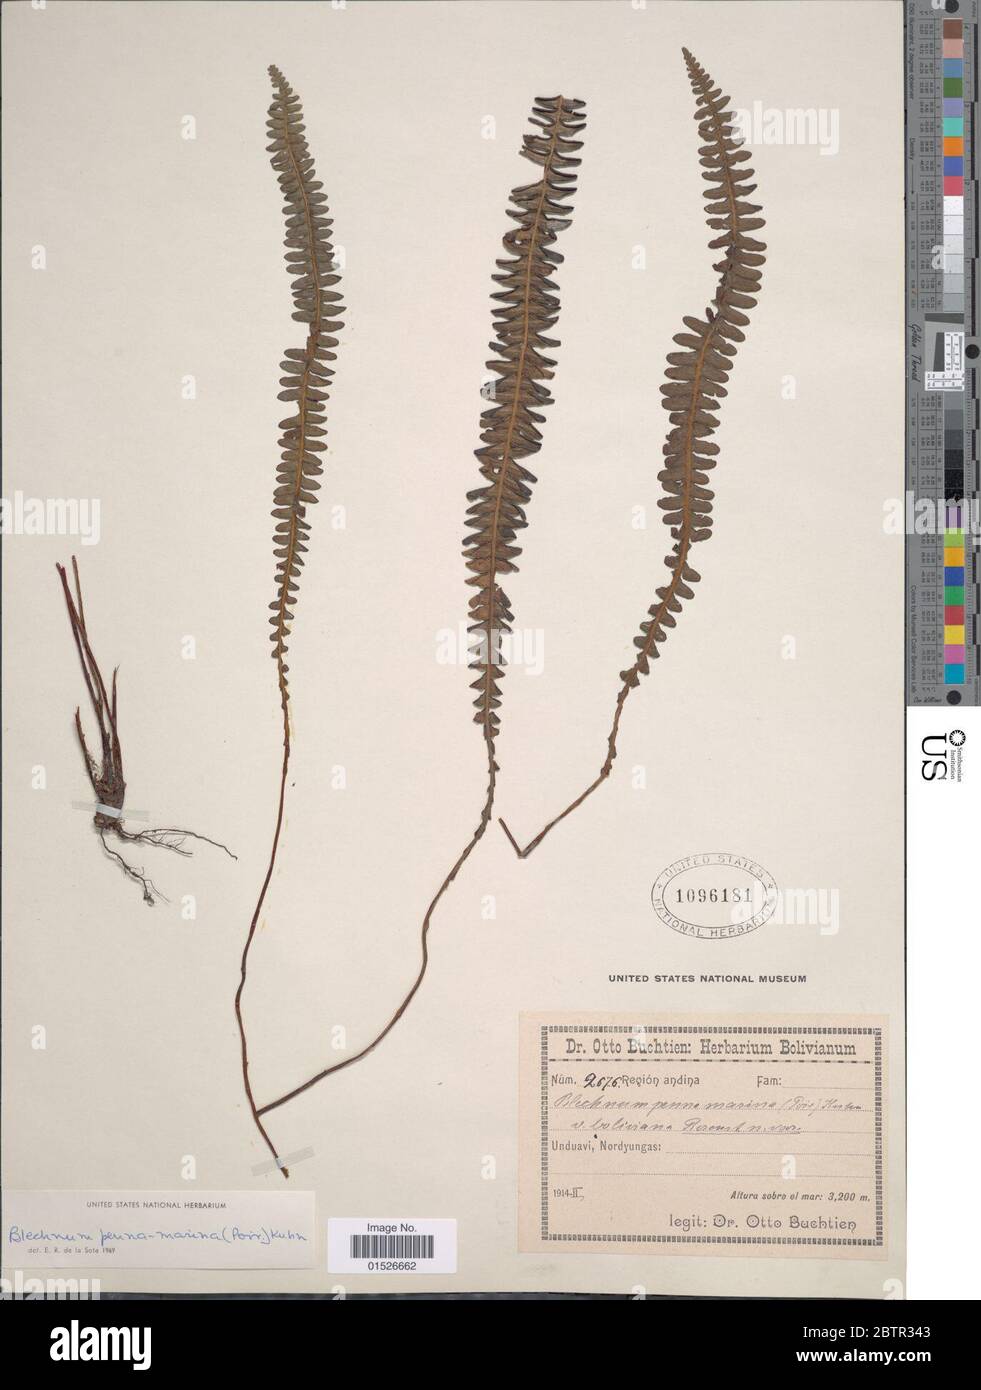 Blechnum pennamarina subsp bolivianum Rosenst ex Looser. Stock Photo